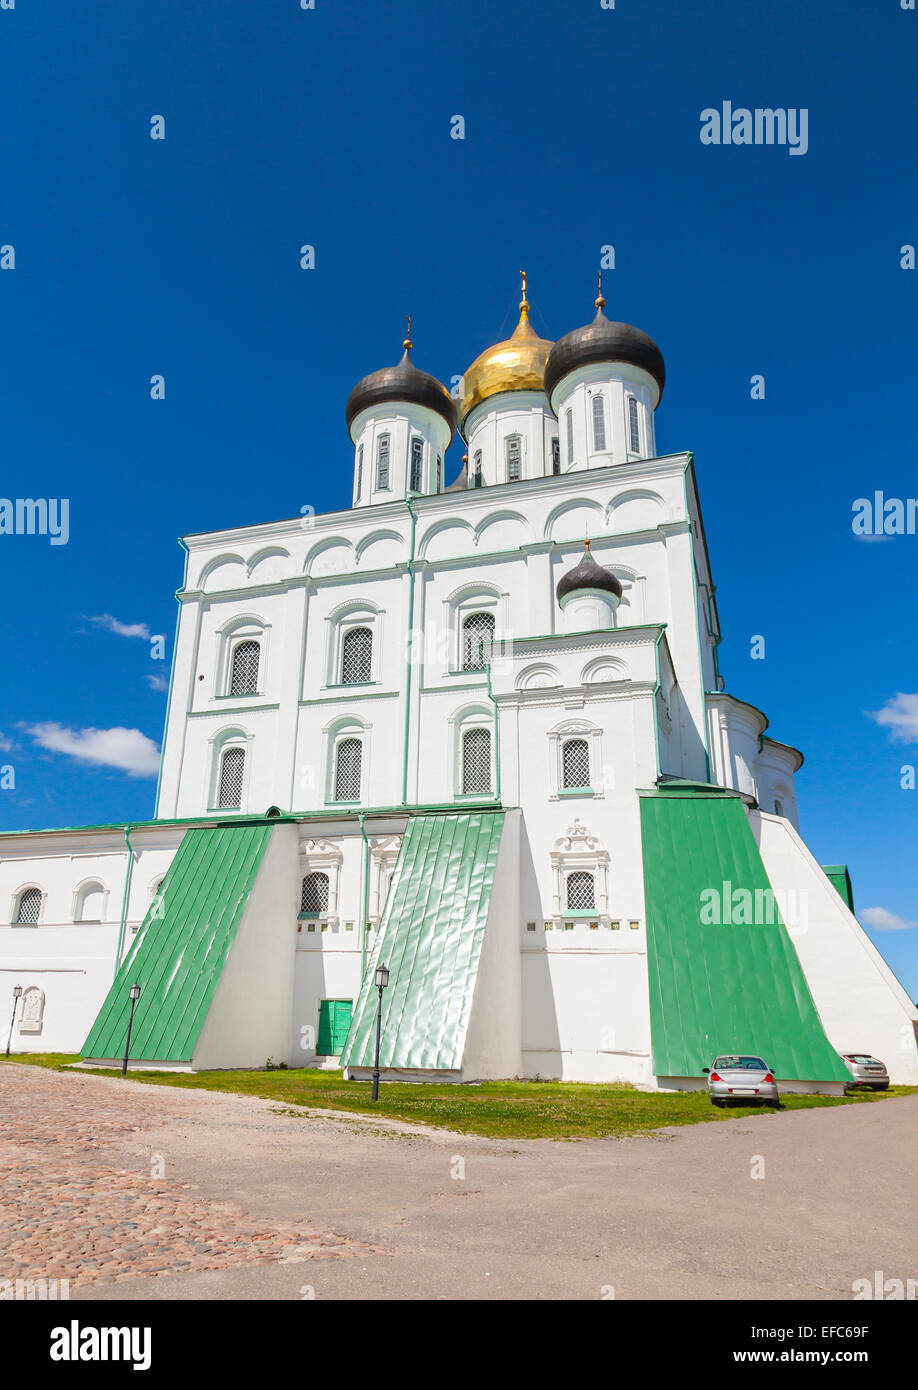 Classica russa antica architettura religiosa esempio. Trinità cattedrale che sorge dal 1589 a Pskov Krom o il Cremlino. Orthodo Foto Stock